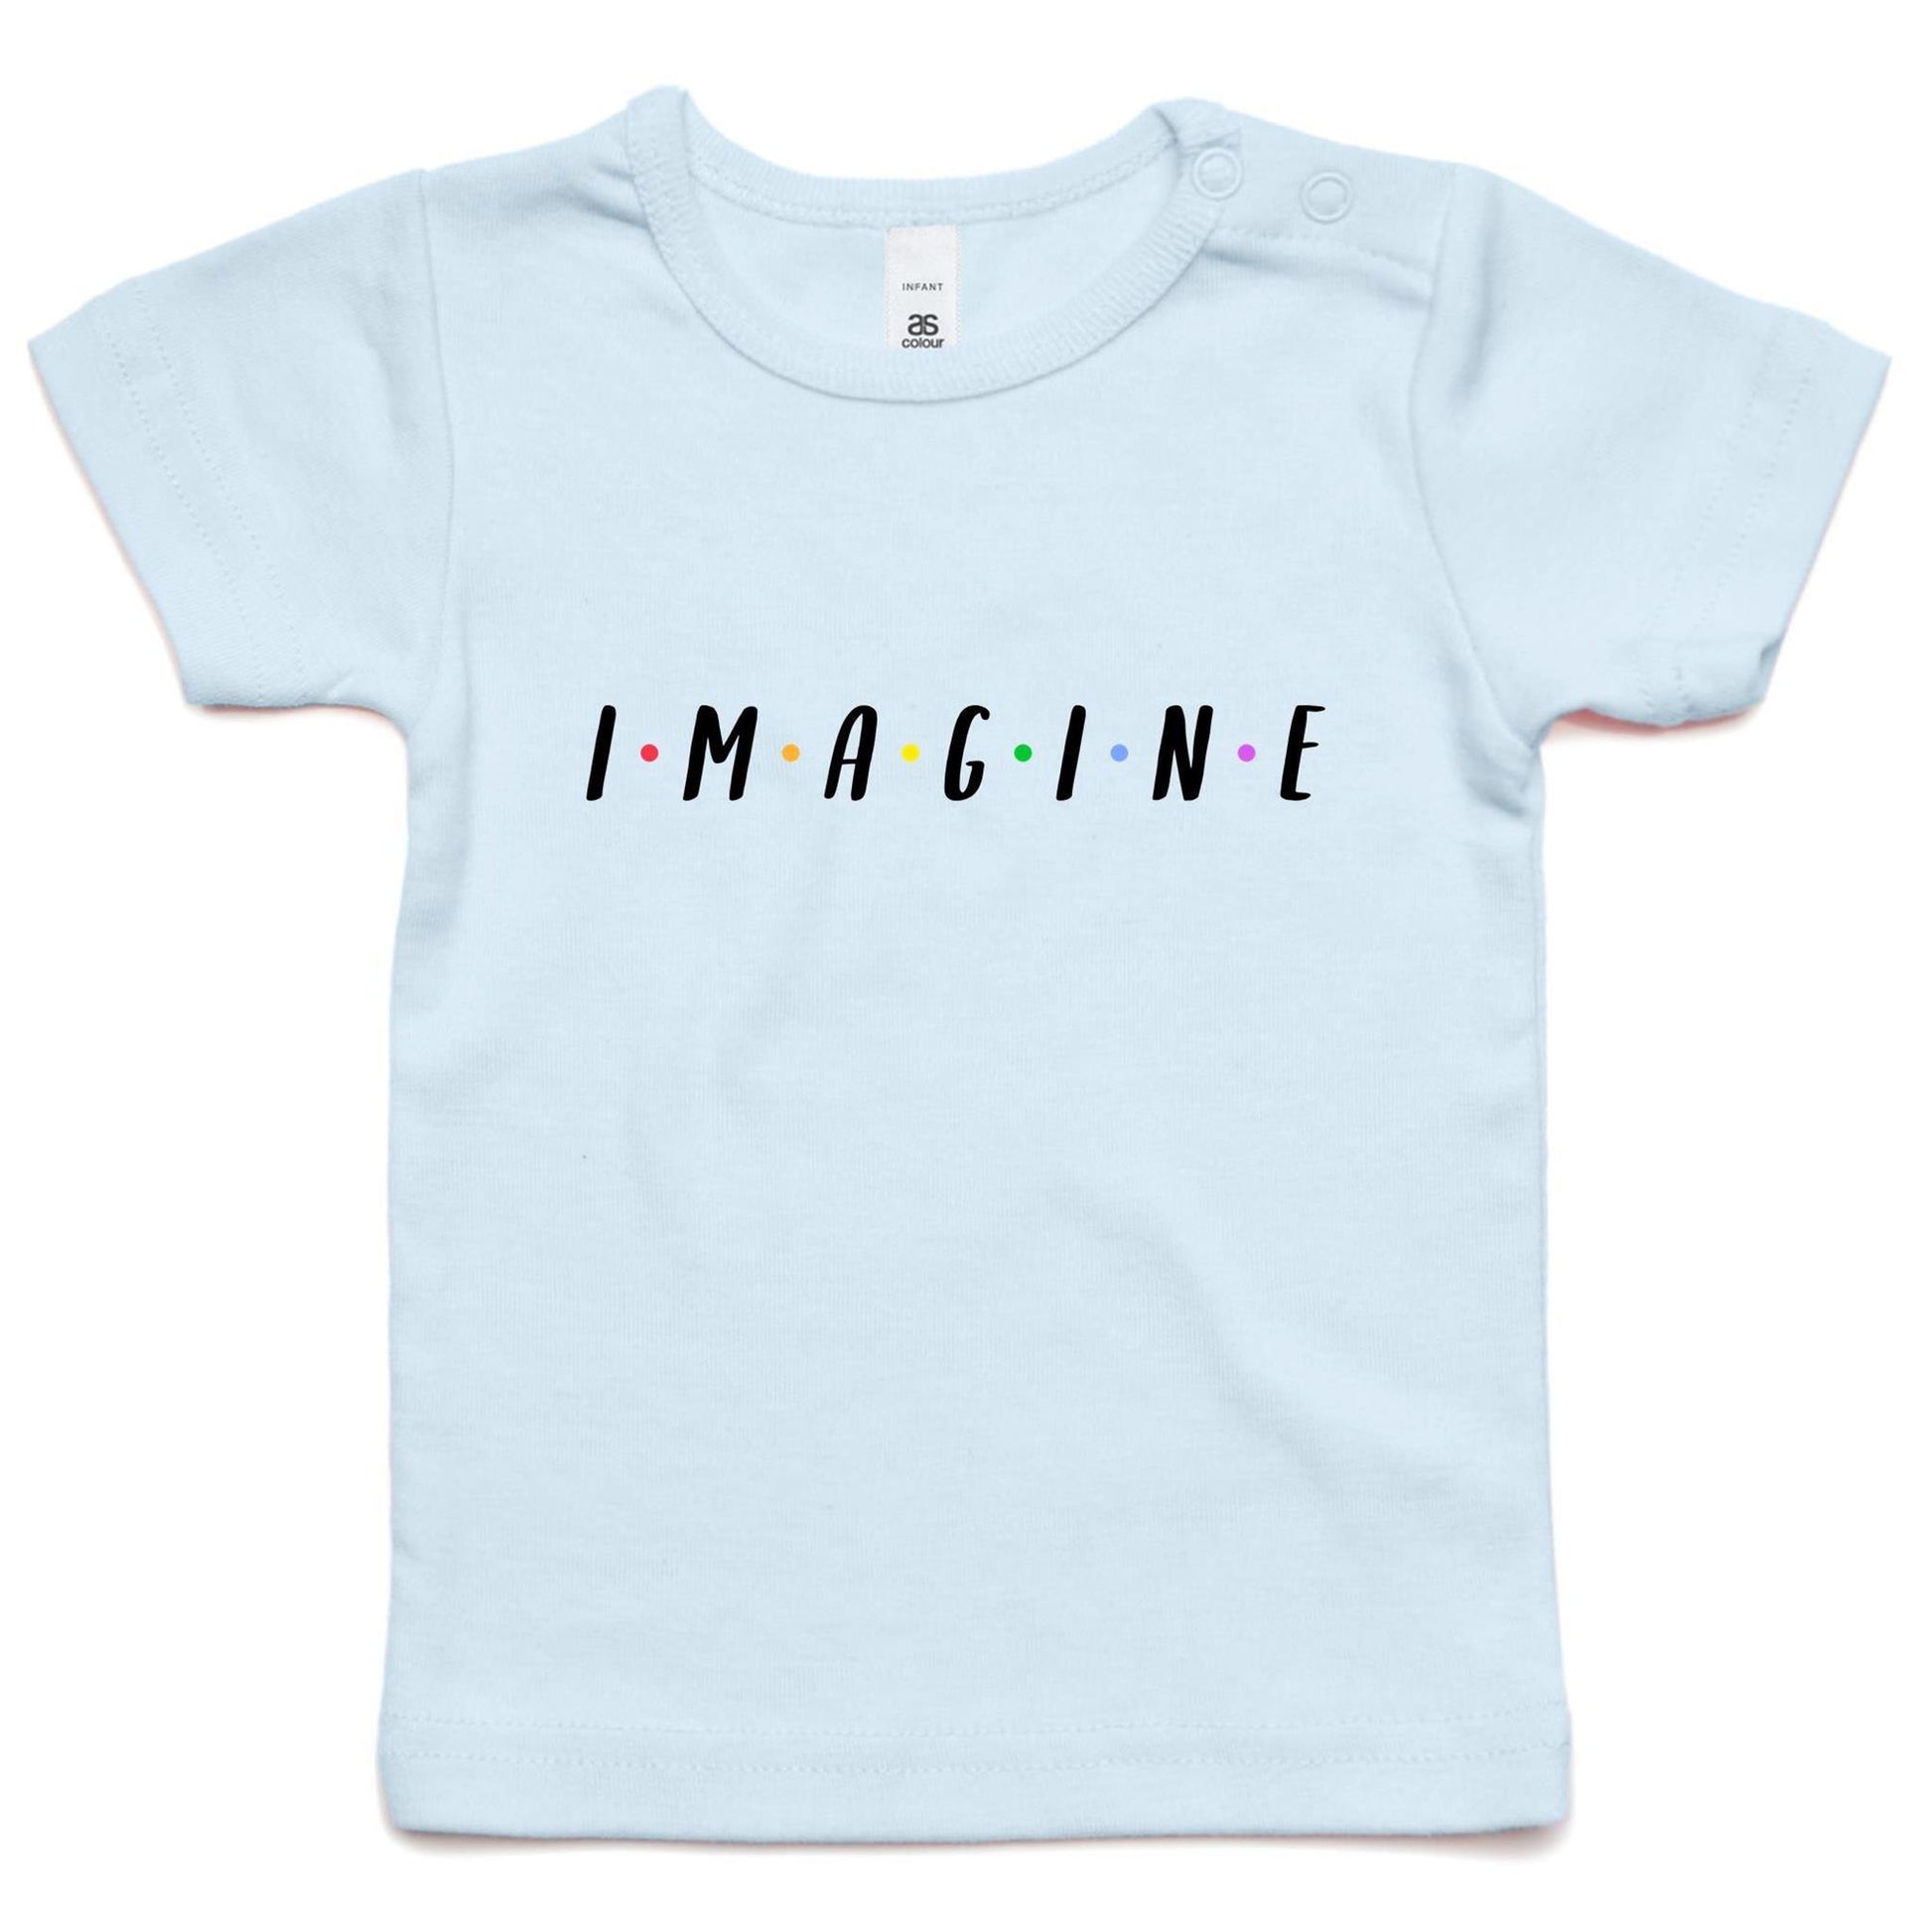 Imagine - Baby T-shirt Powder Blue Baby T-shirt kids